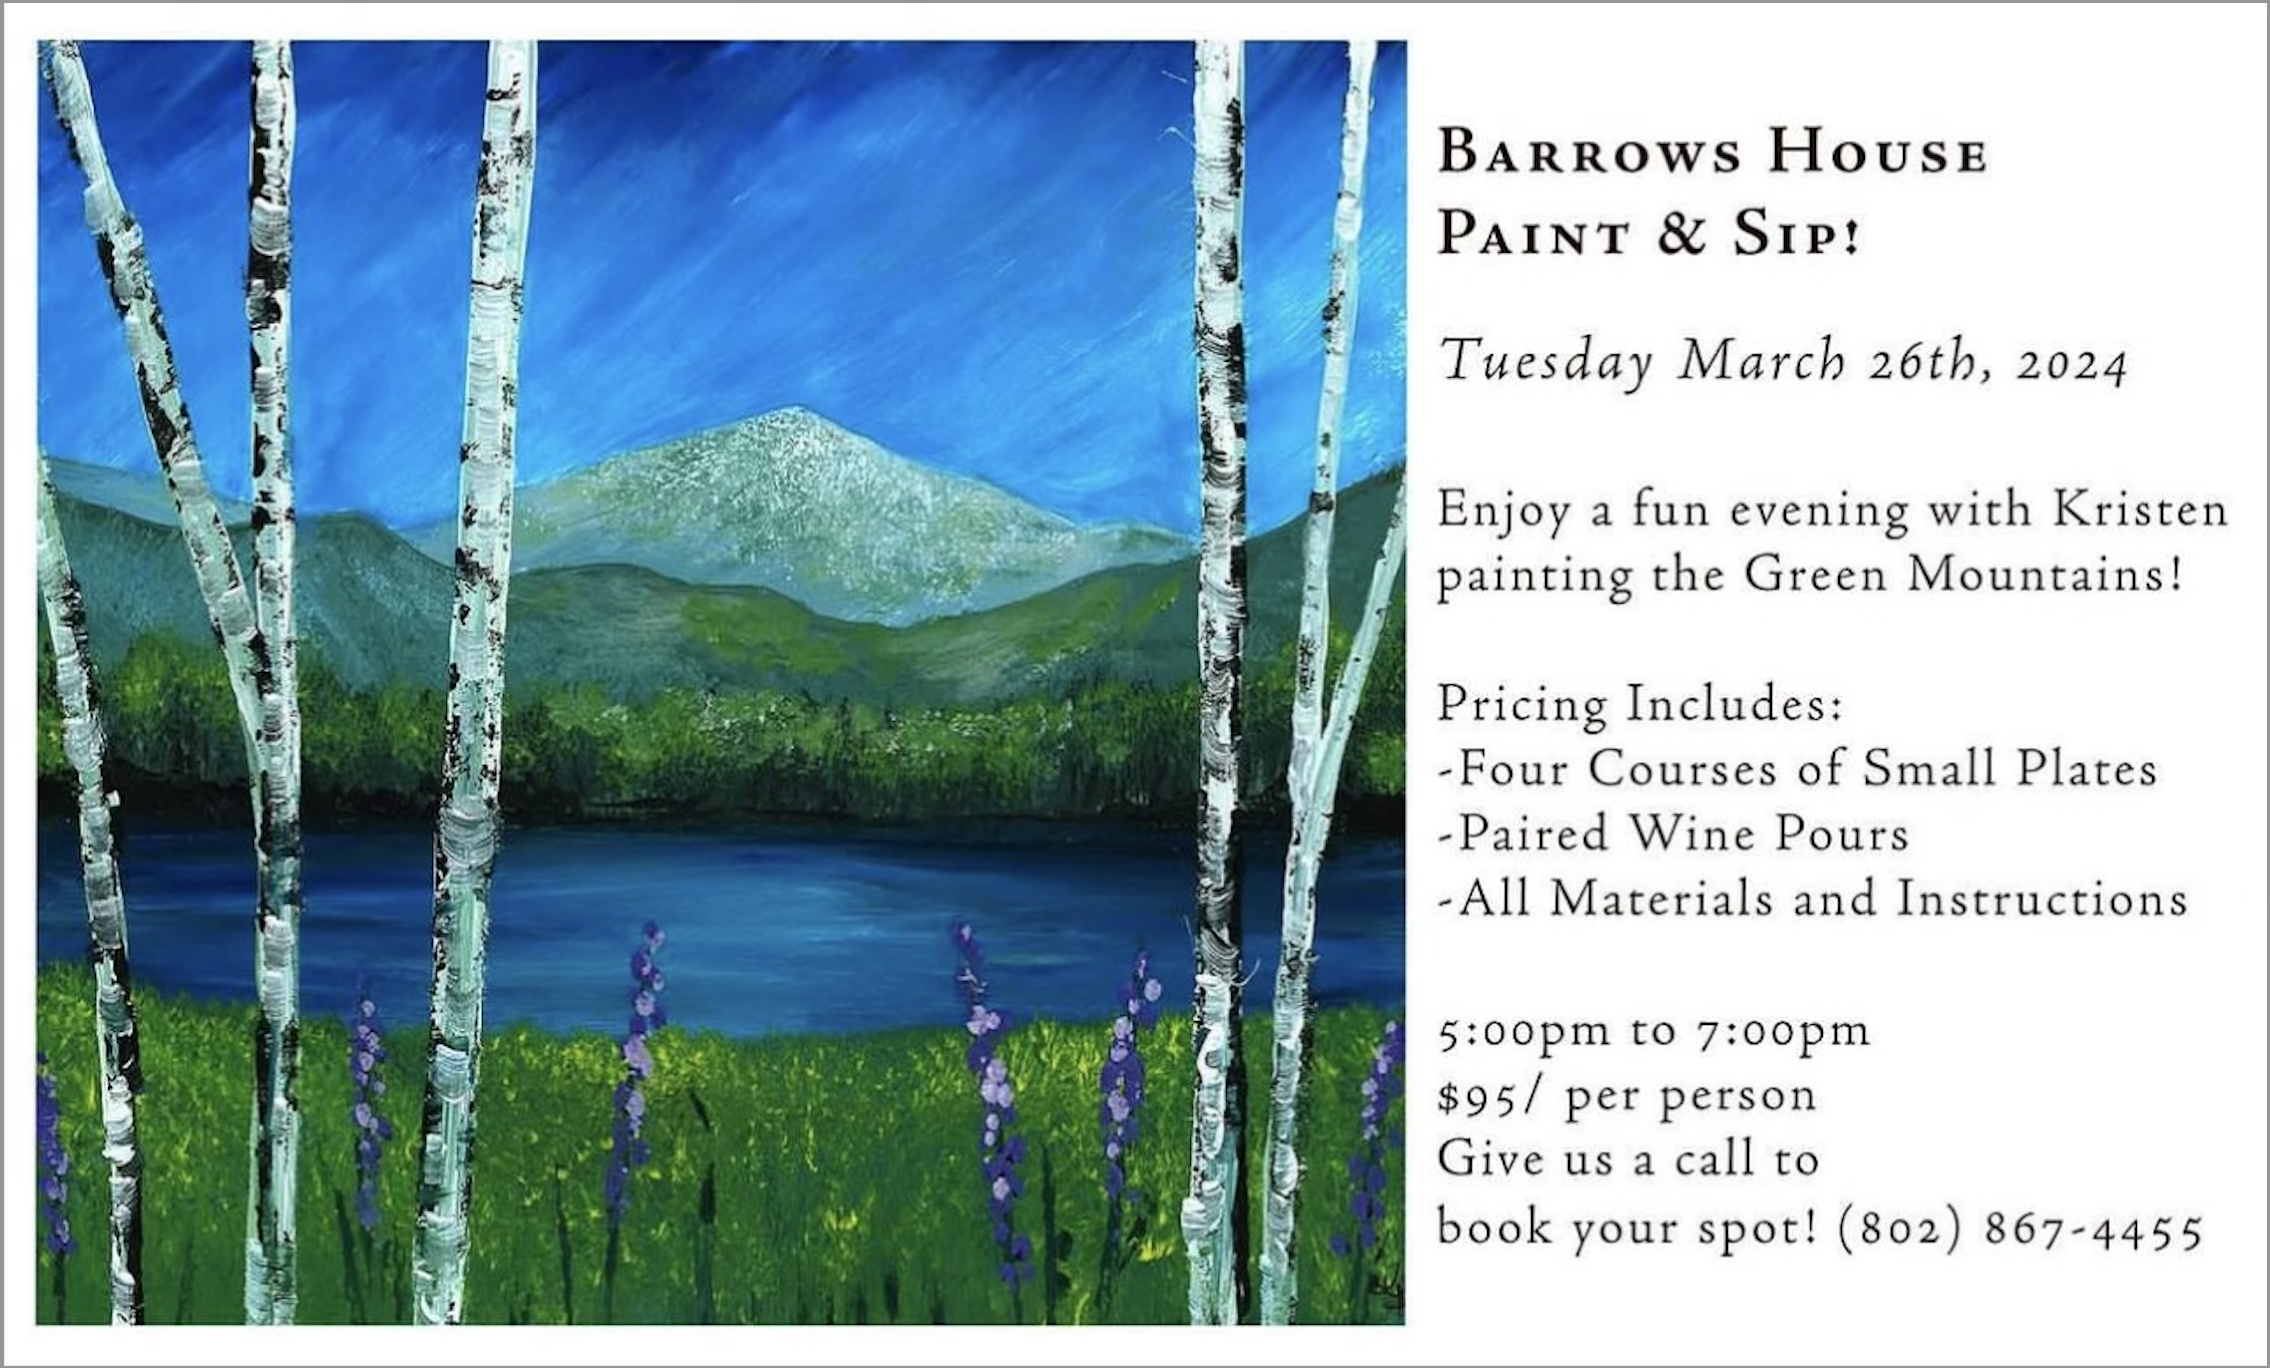 Barrows House Paint & Sip